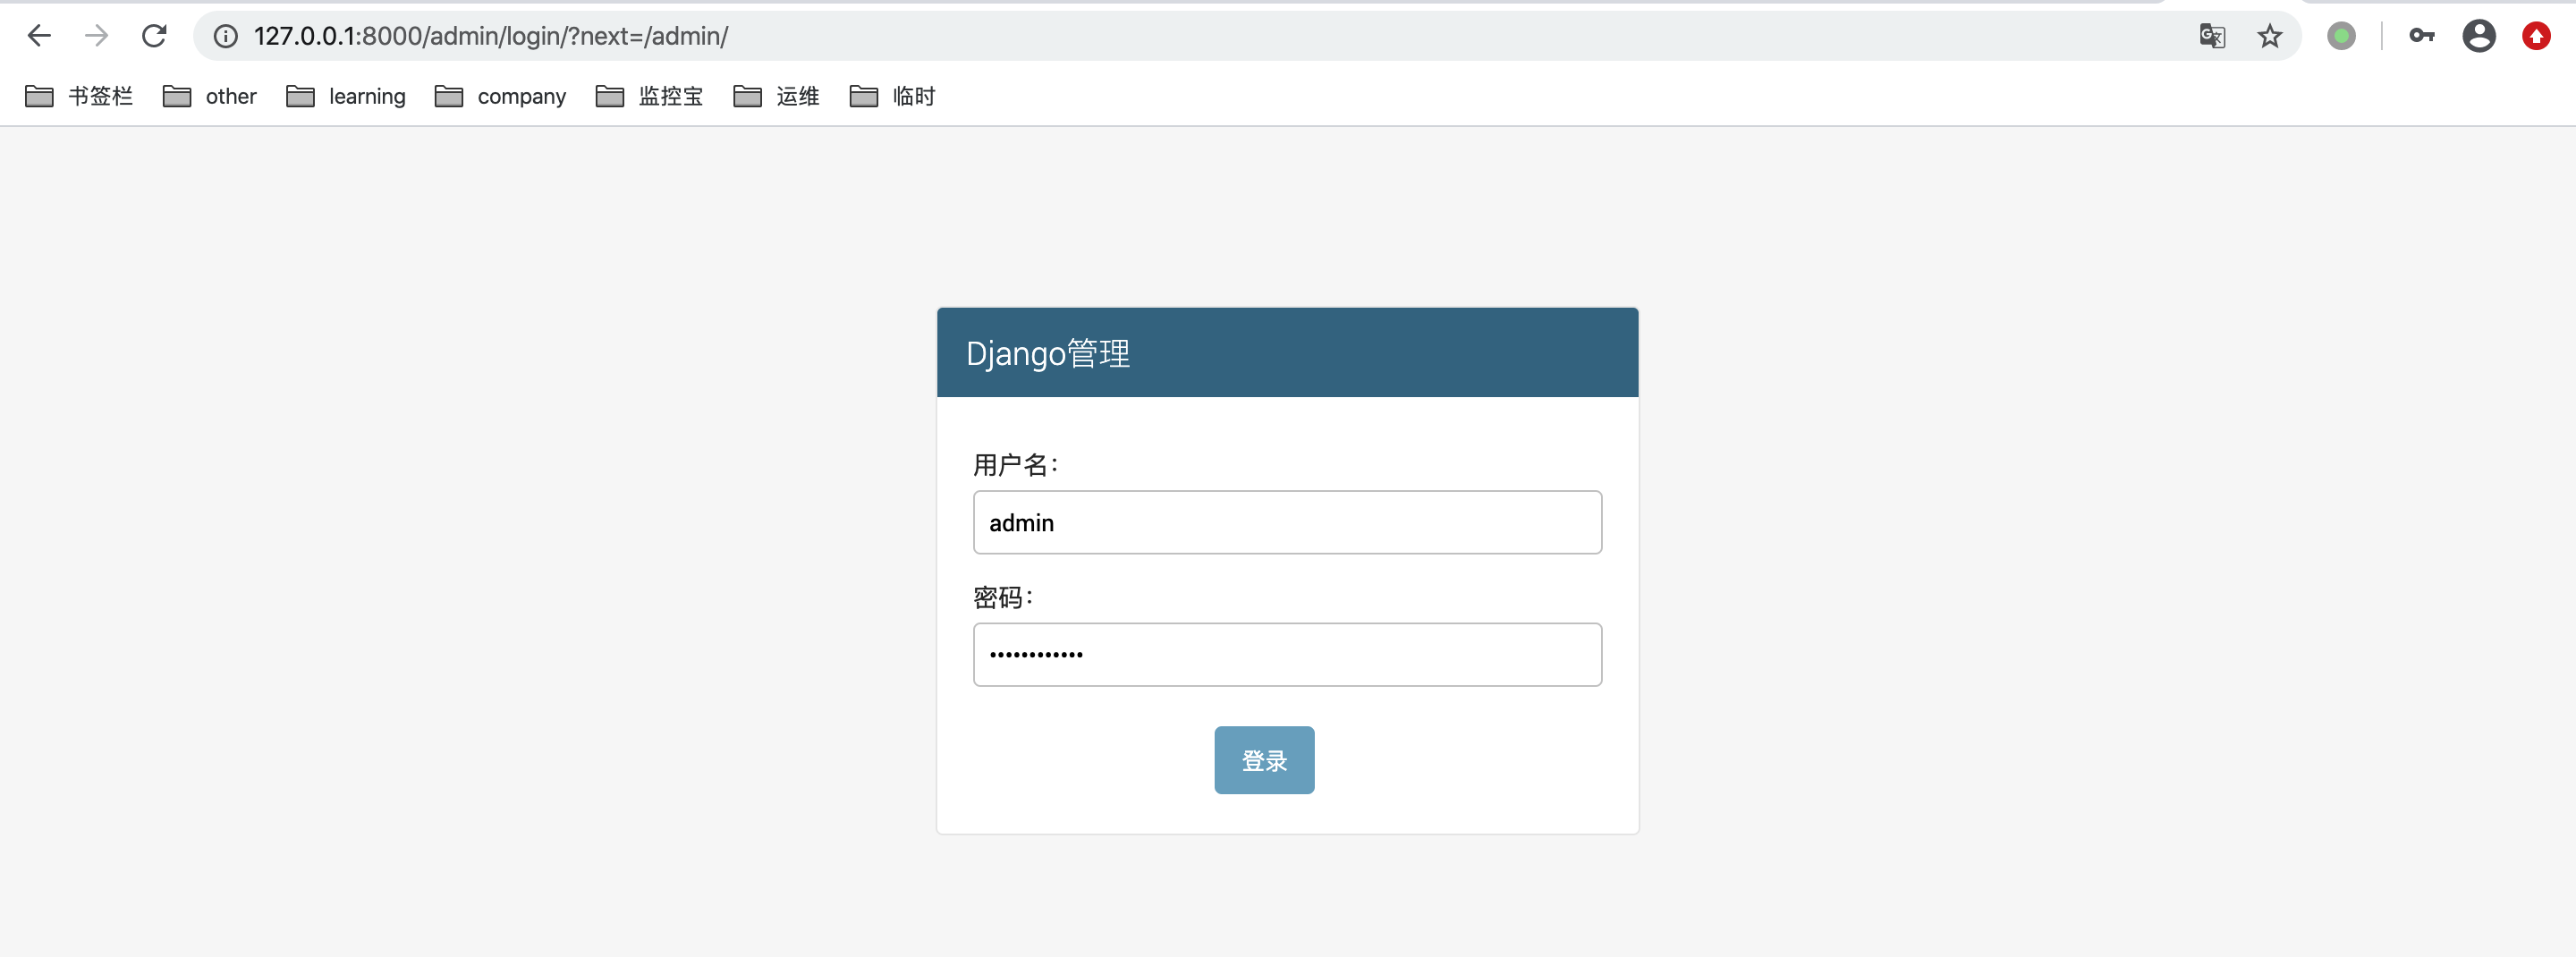 Django password. Джанго админ панель. Login Django схема. Http://127.0.0.1:8000/admin/. Джанго админка логин.